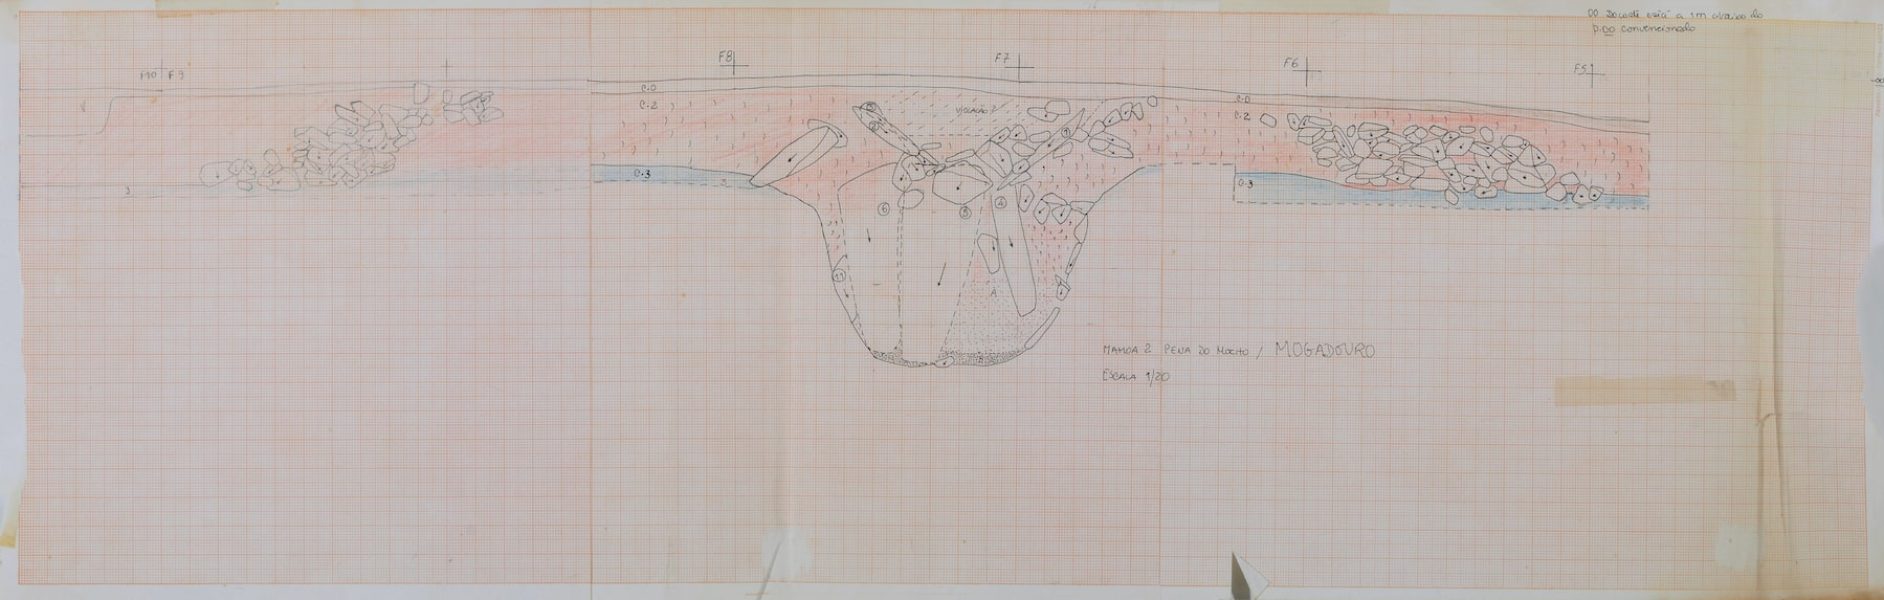 Mamoa 2 de Pena do Mocho-Mogadouro: corte estratigráfico da parte central do monumento Fossa/"poço" funerária